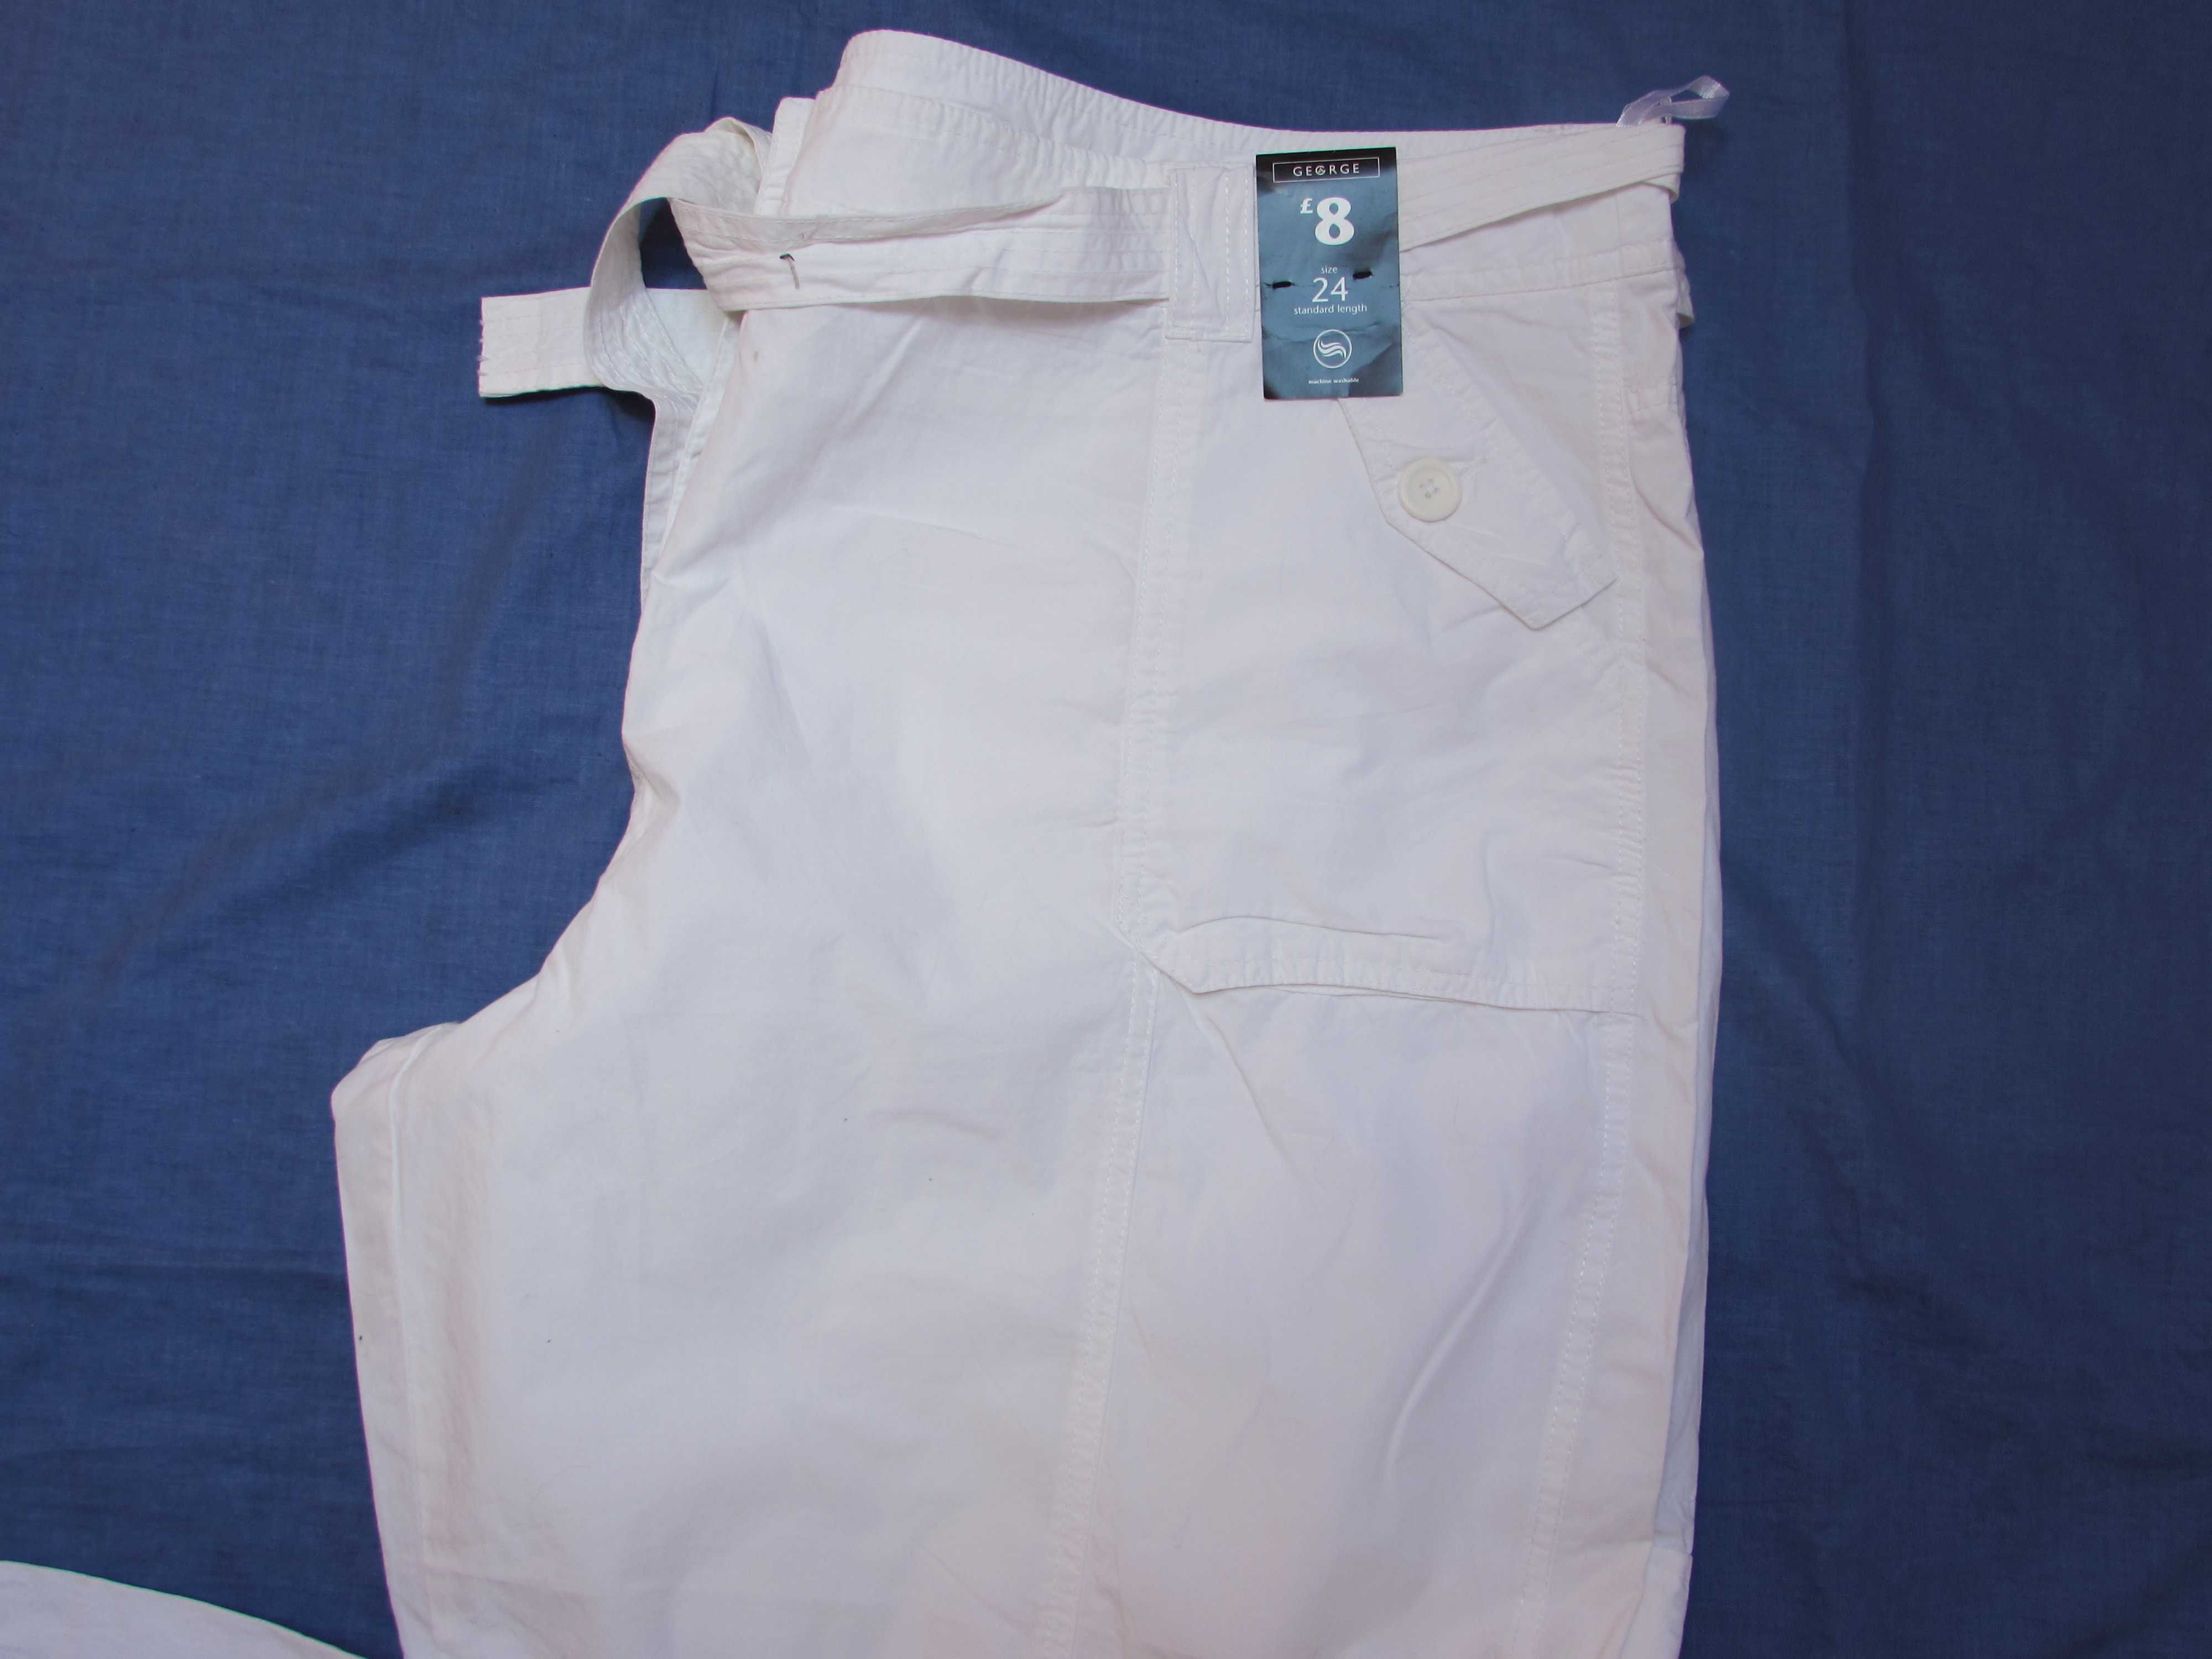 Białe spodnie r. 52 (24) nowe